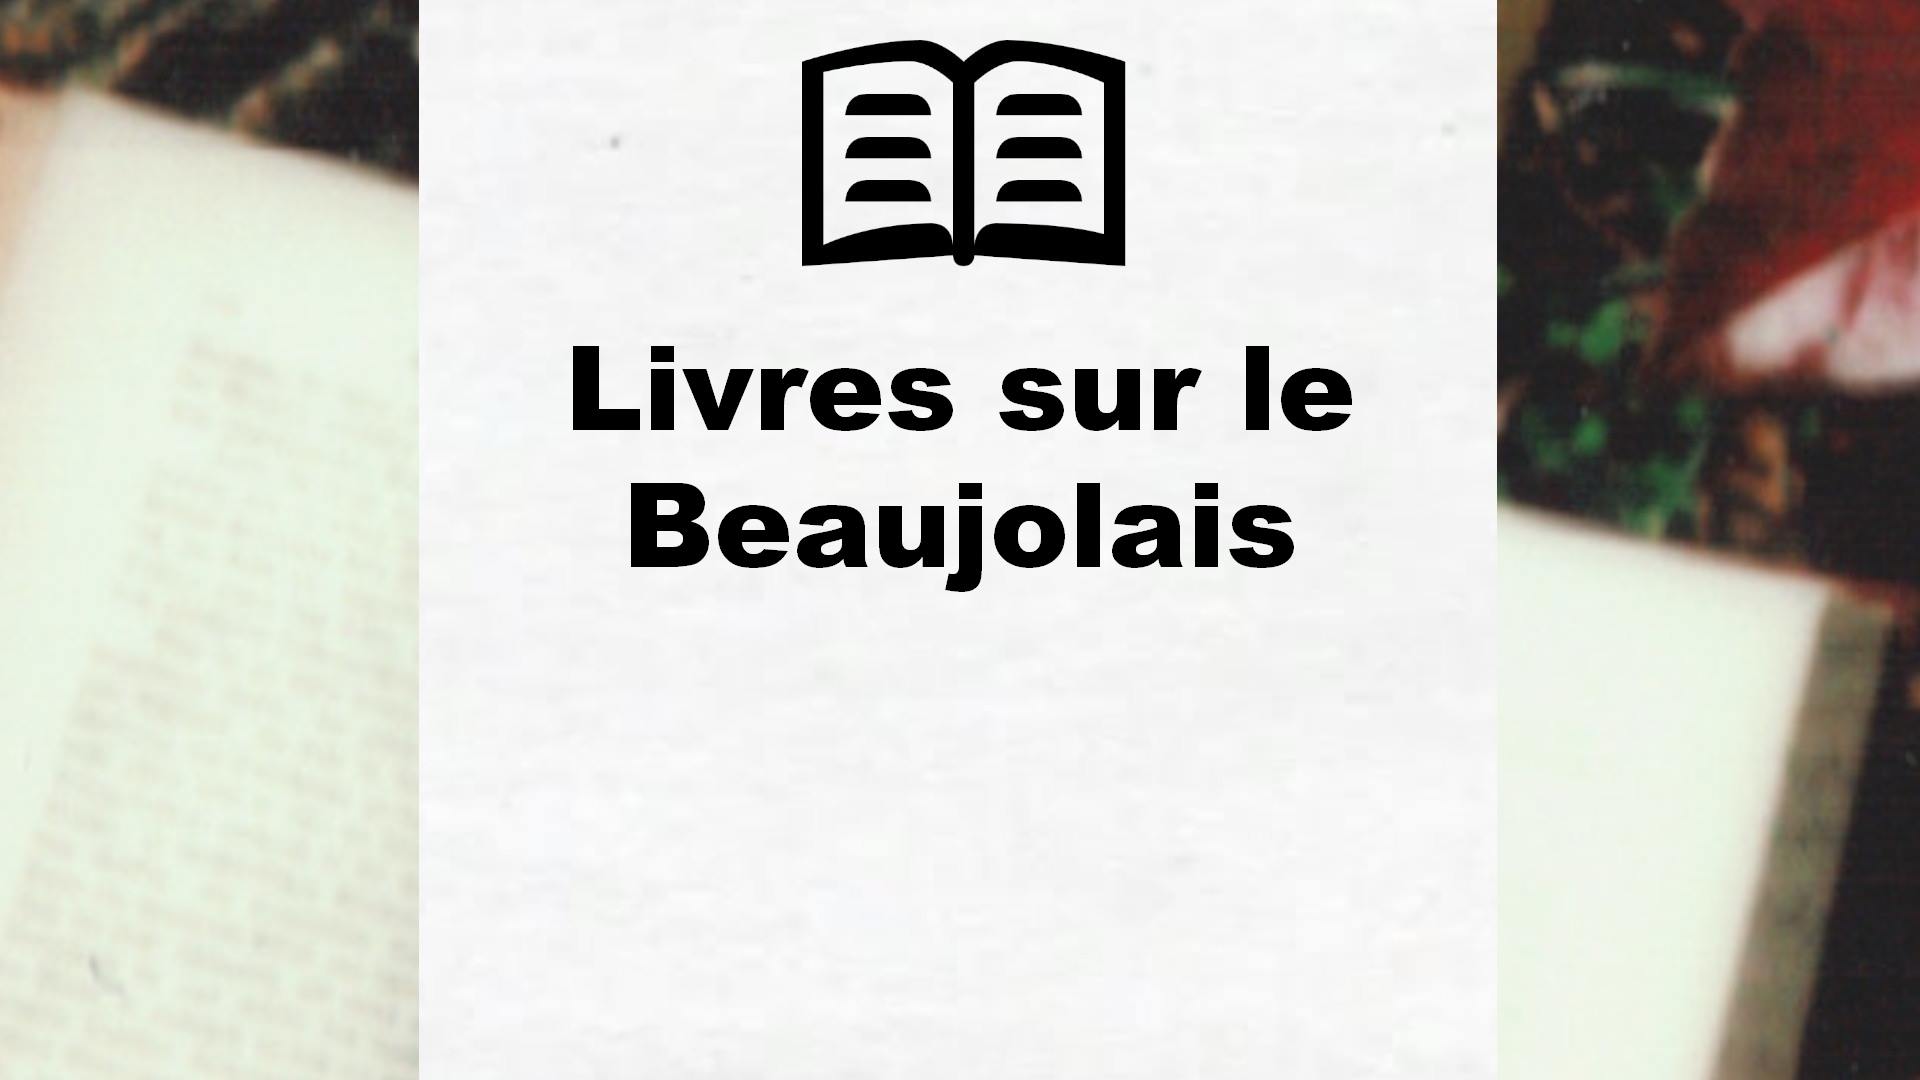 Livres sur le Beaujolais